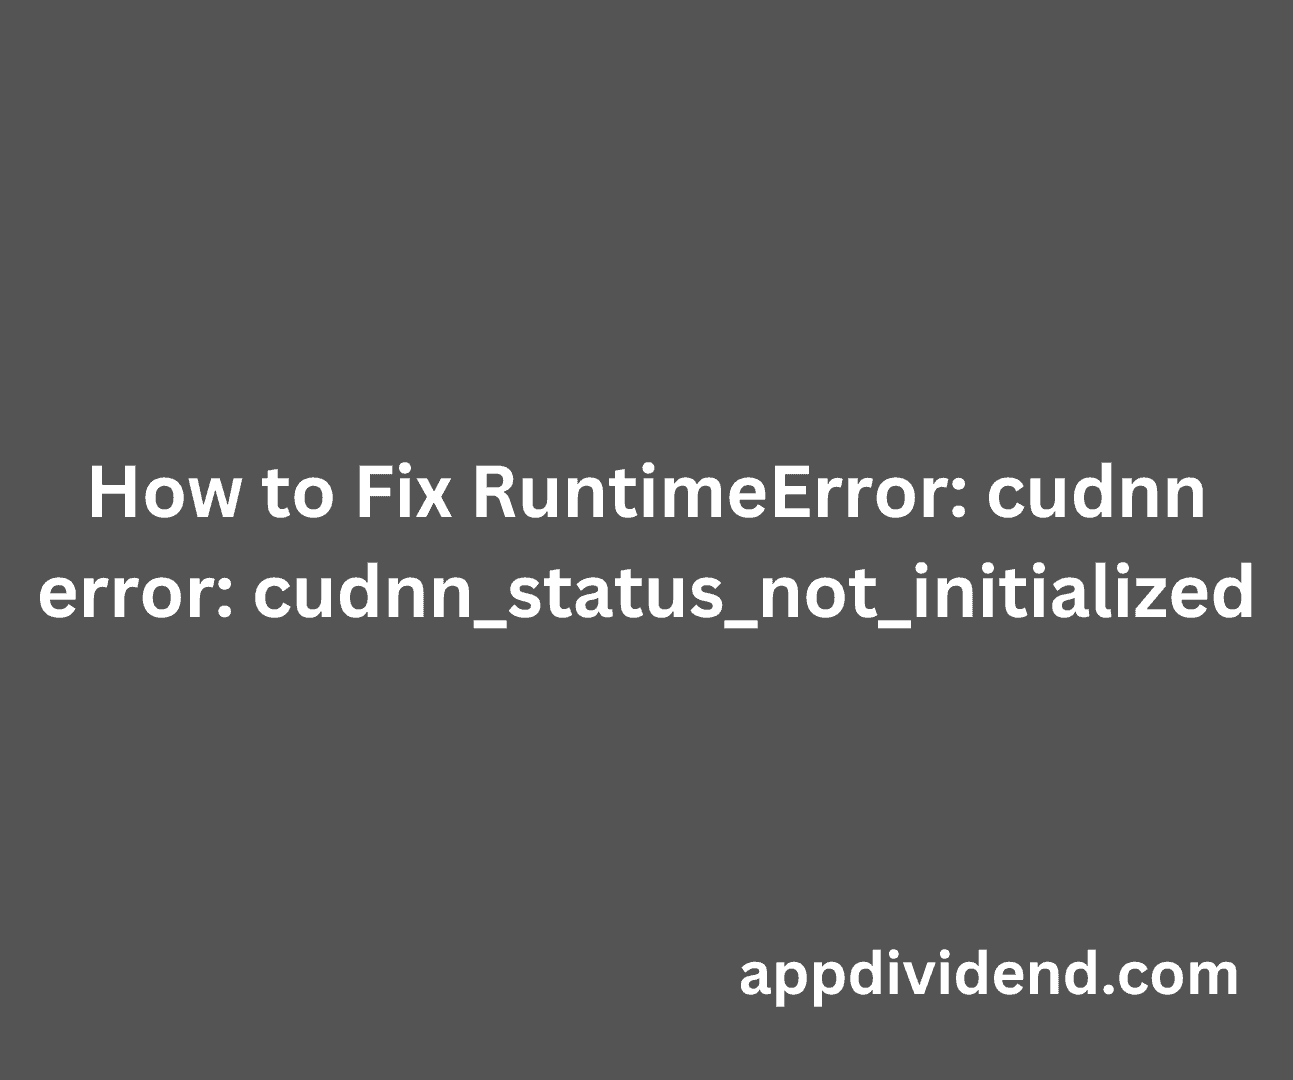 How to Fix RuntimeError - cudnn error - cudnn_status_not_initialized